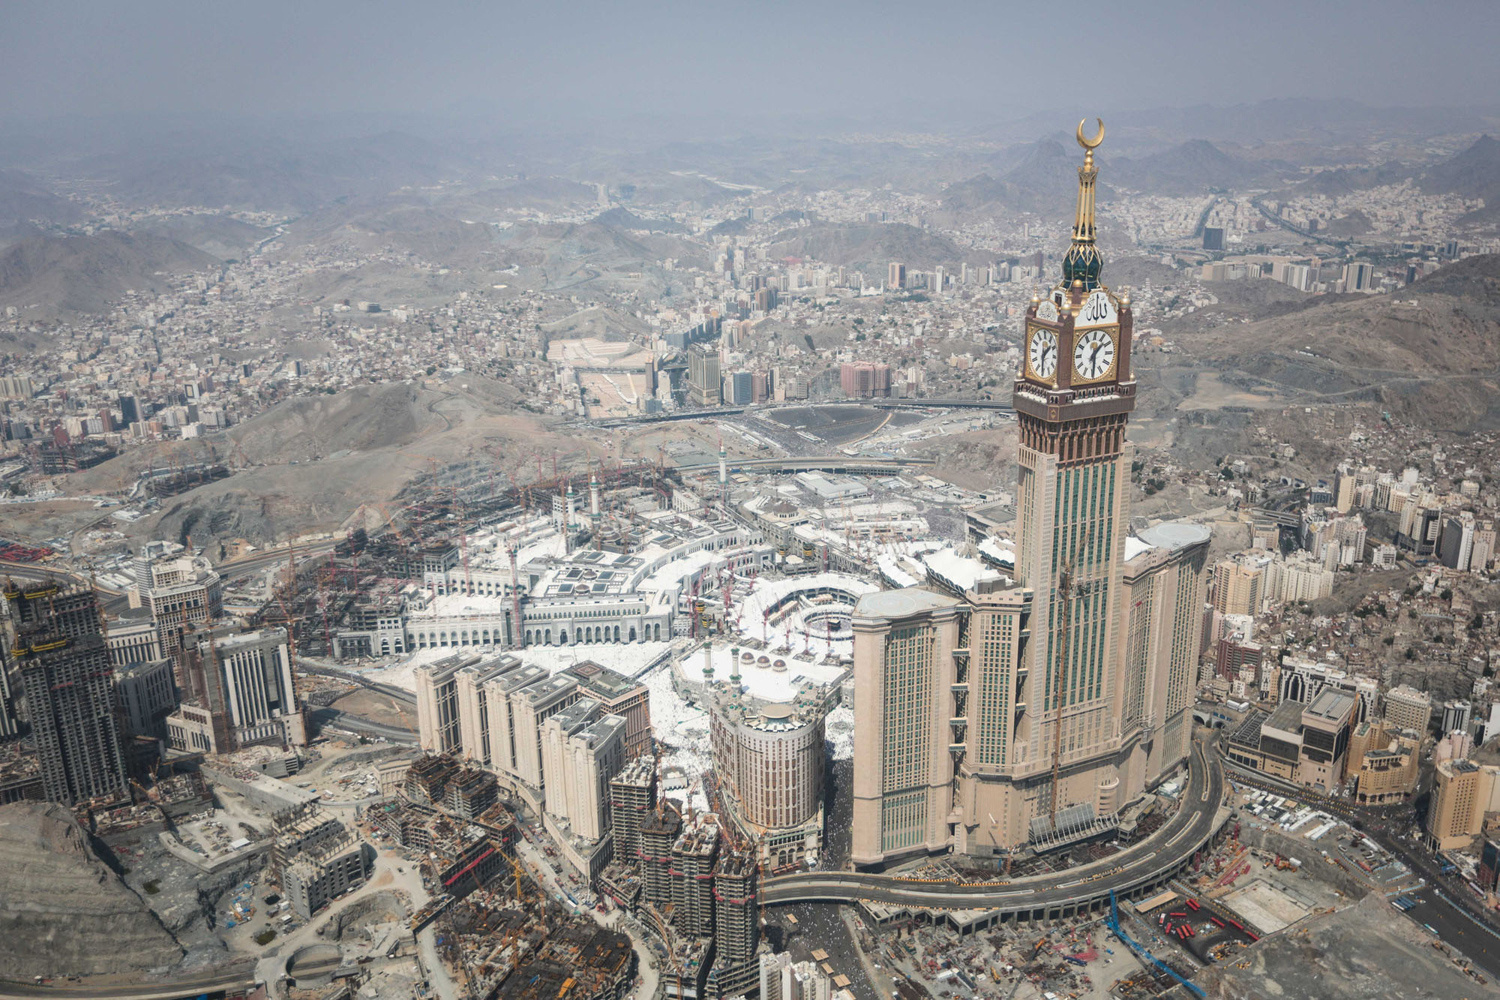 麦加皇家钟塔饭店,601米,已建成,是一栋位于沙特阿拉伯王国的伊斯兰教